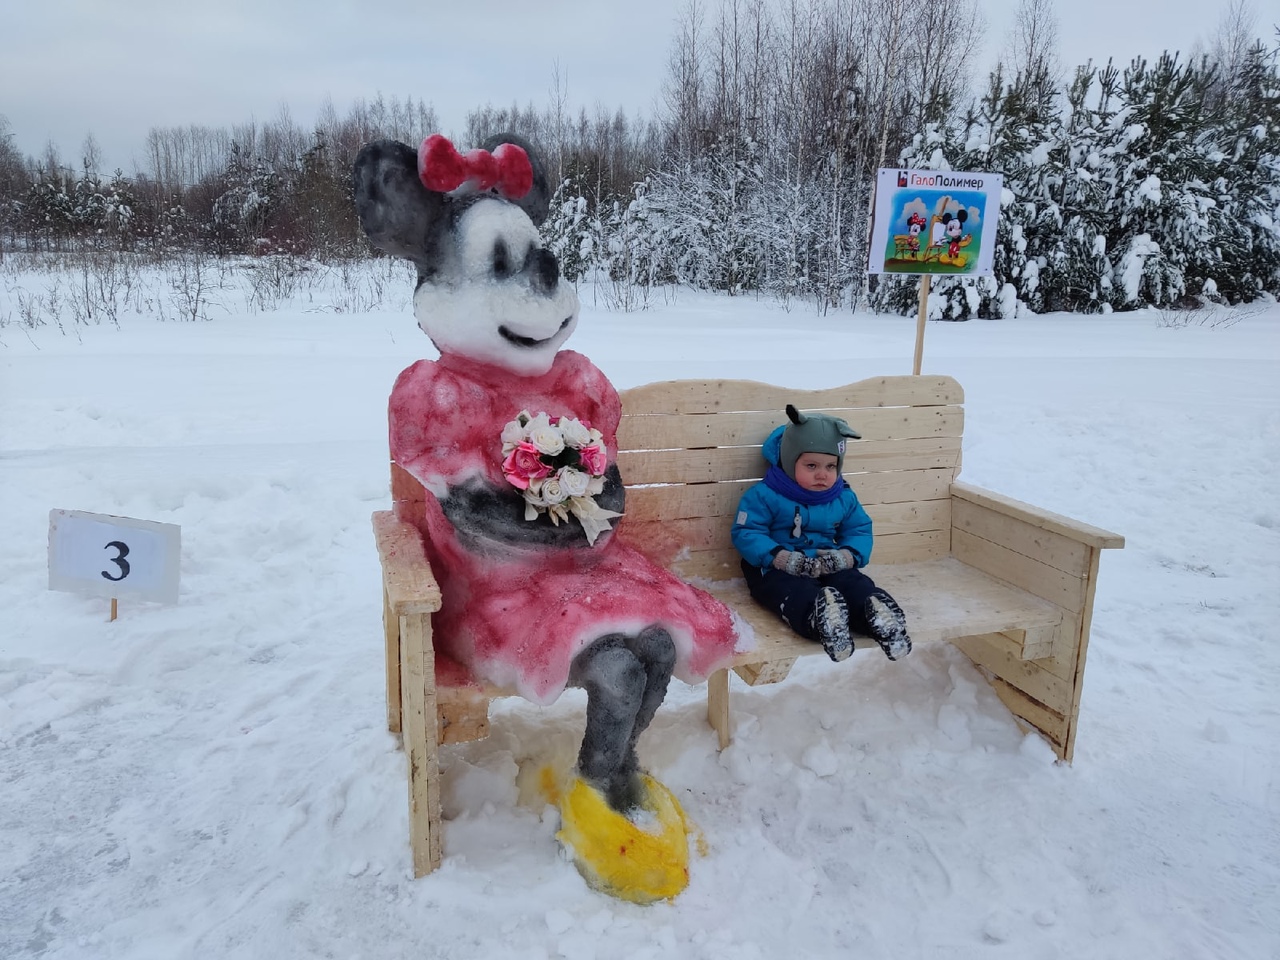 Зимняя фантазия: удивите всех снежной фигурой с любимым мультяшным персонажем - Винни-Пухом